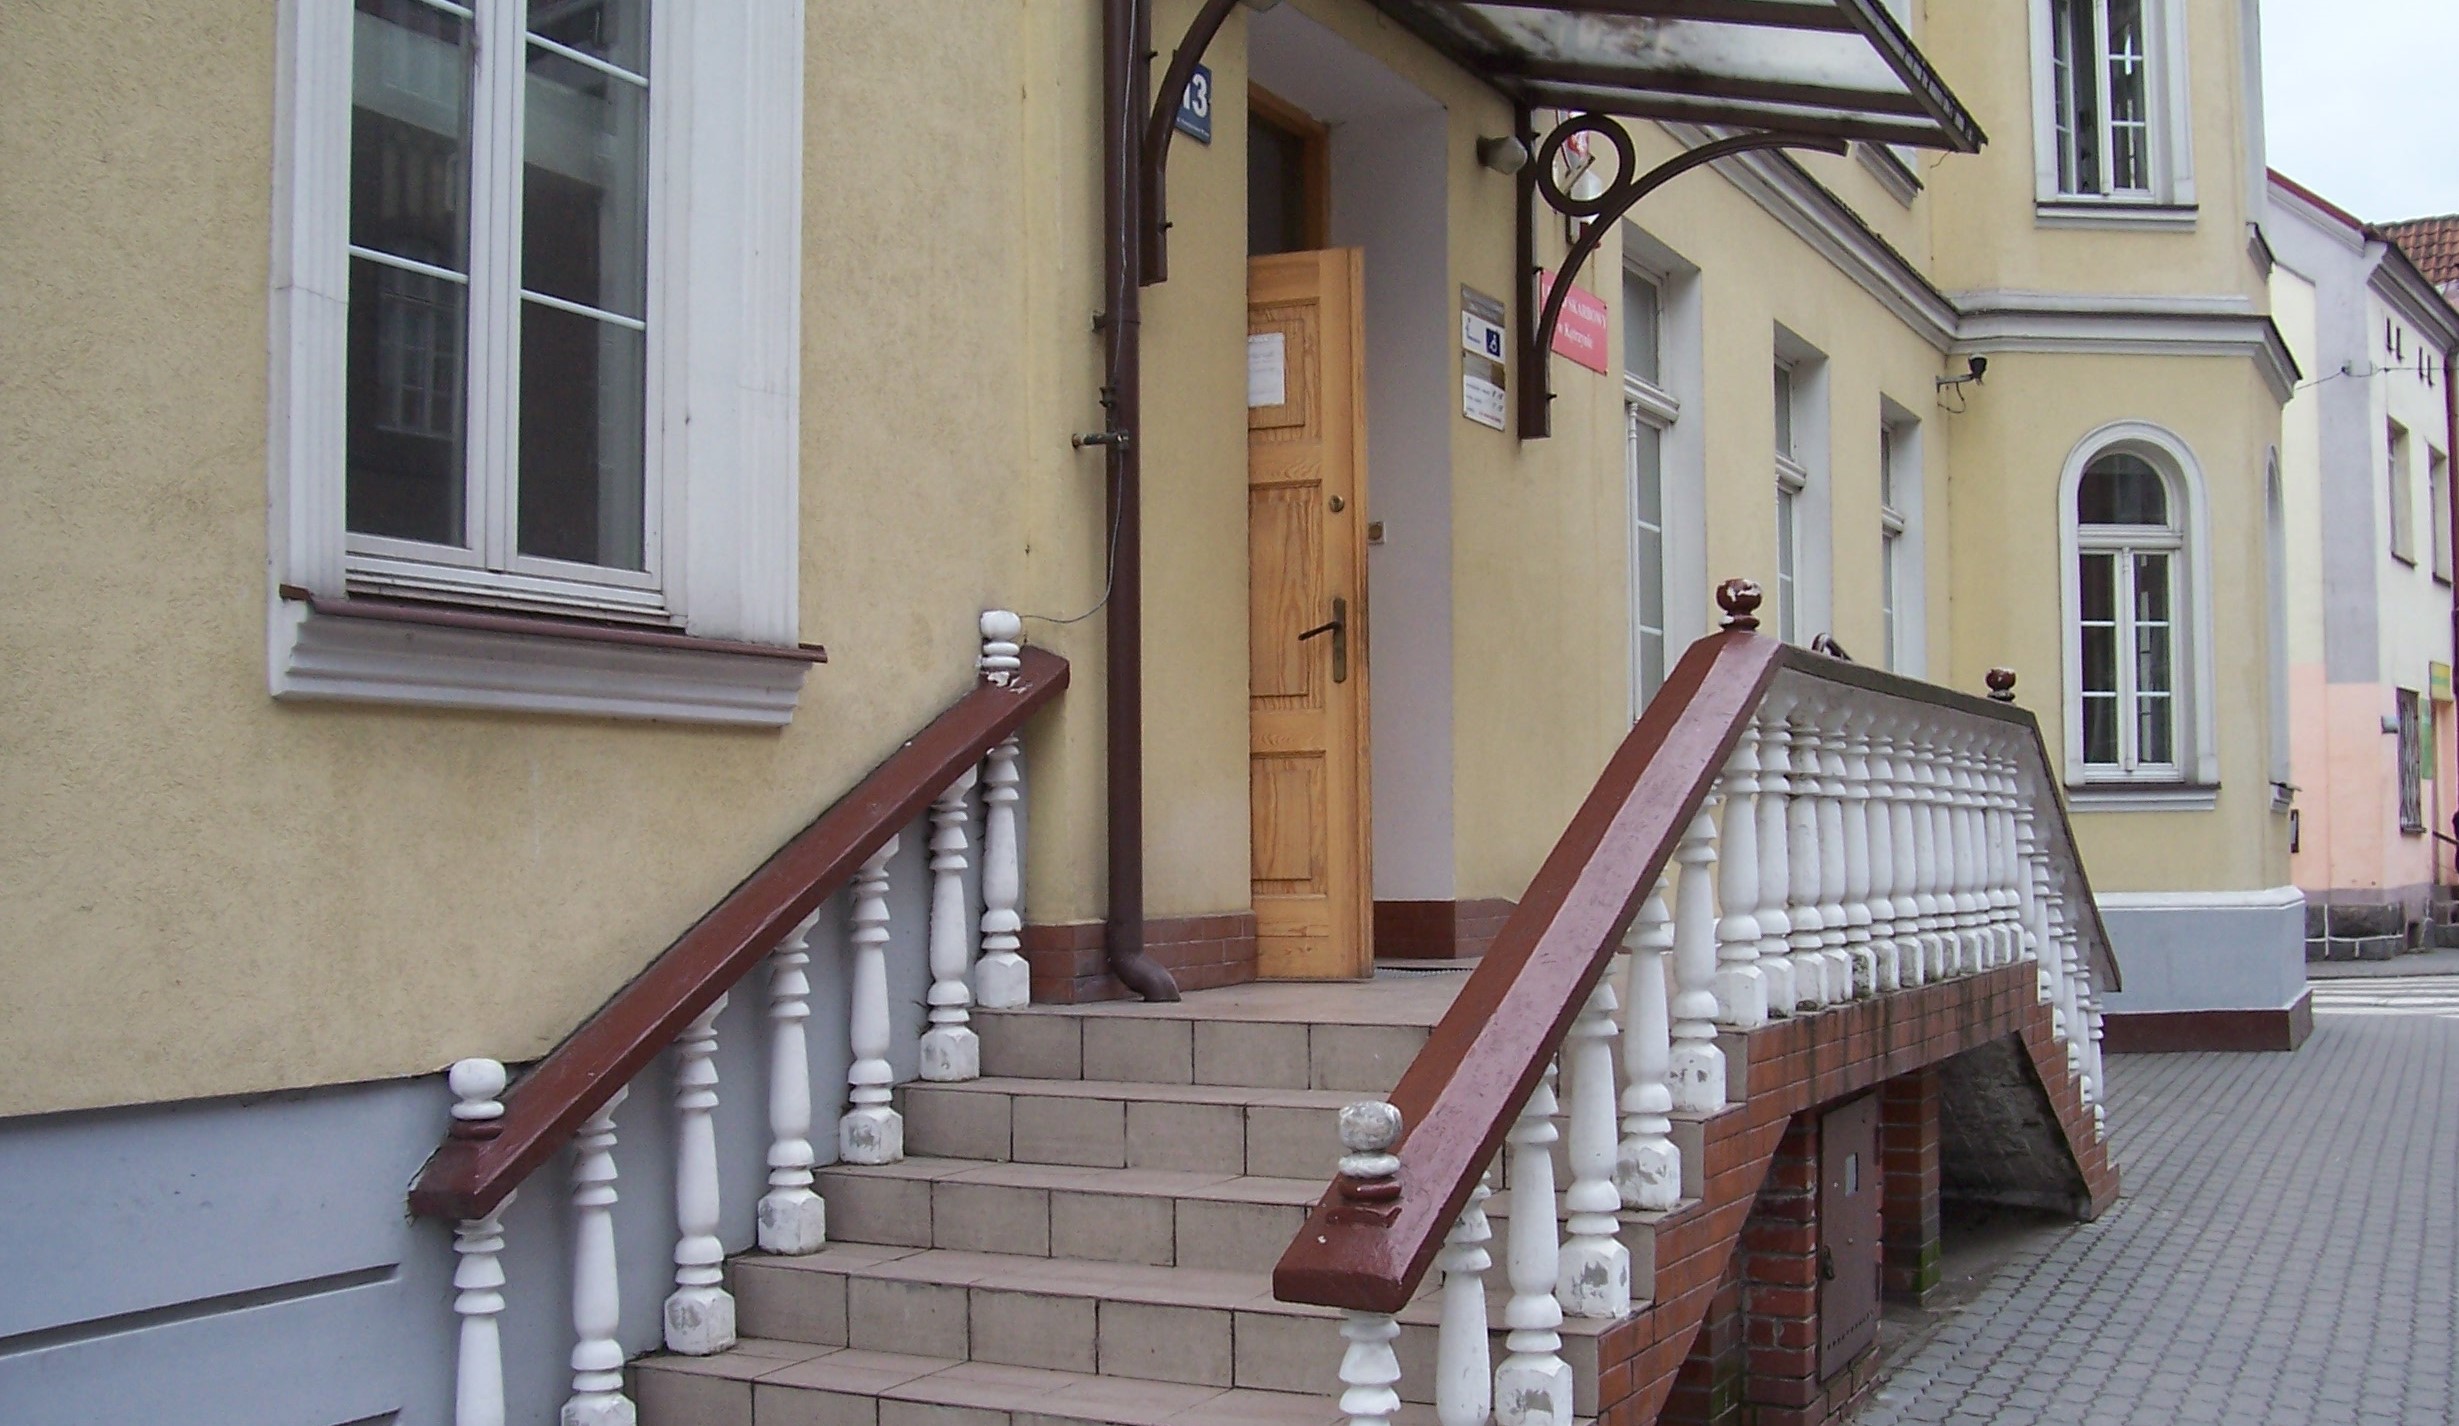 Wejście do budynku, w którym znajduje się siedziba Urzędu Skarbowego w Kętrzynie.